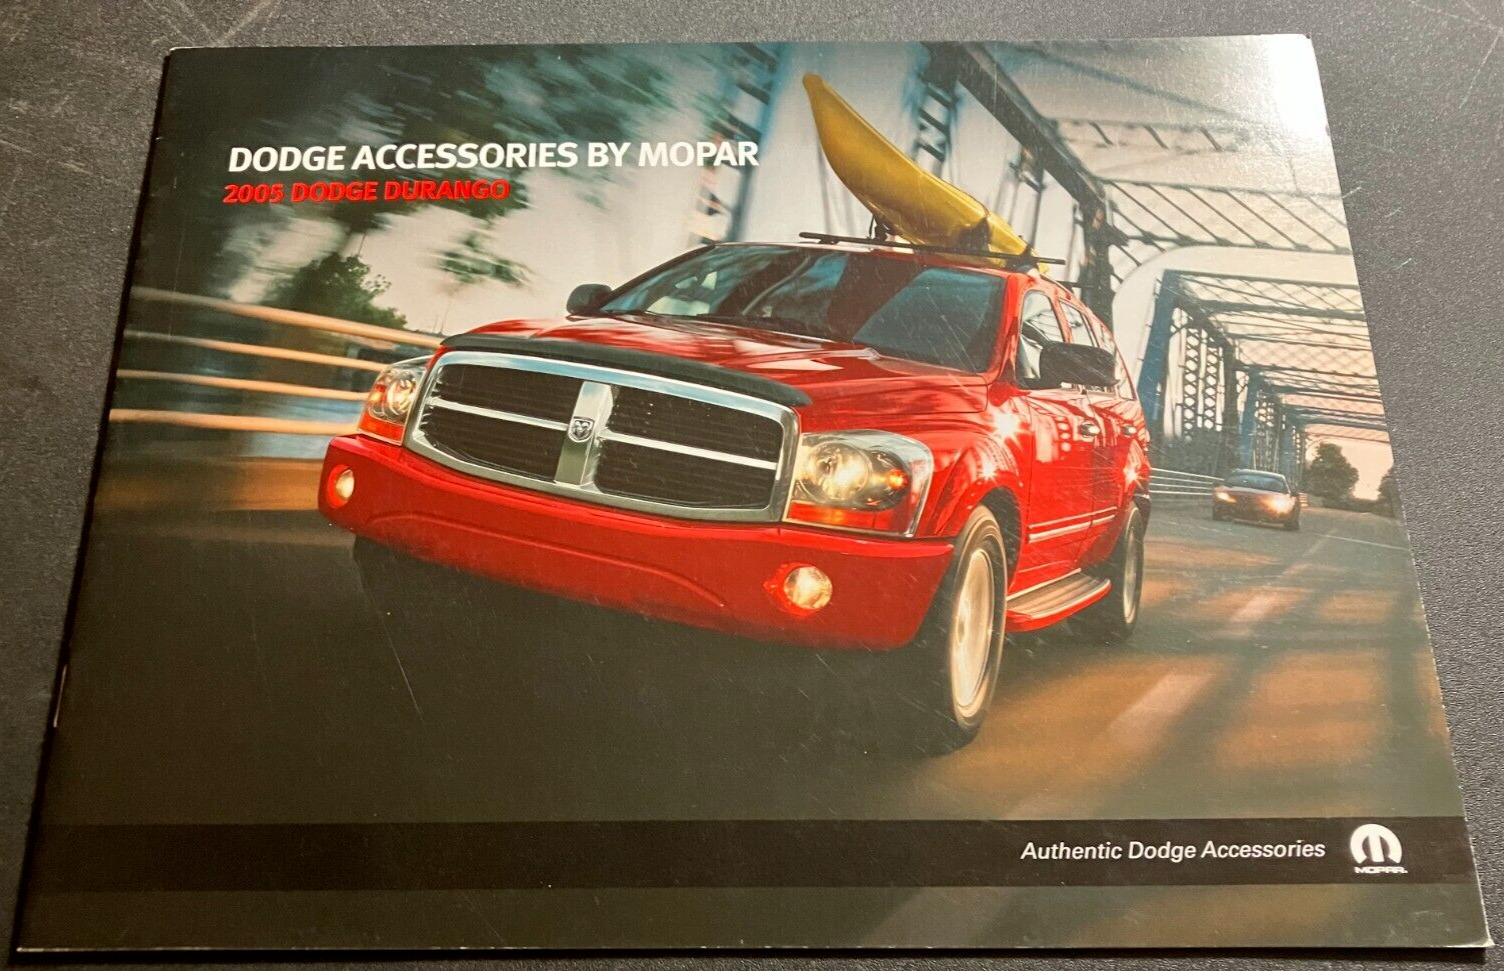 2005 Dodge Durango Accessories by Mopar - 12-Page Dealer Sales Brochure - CLEAN